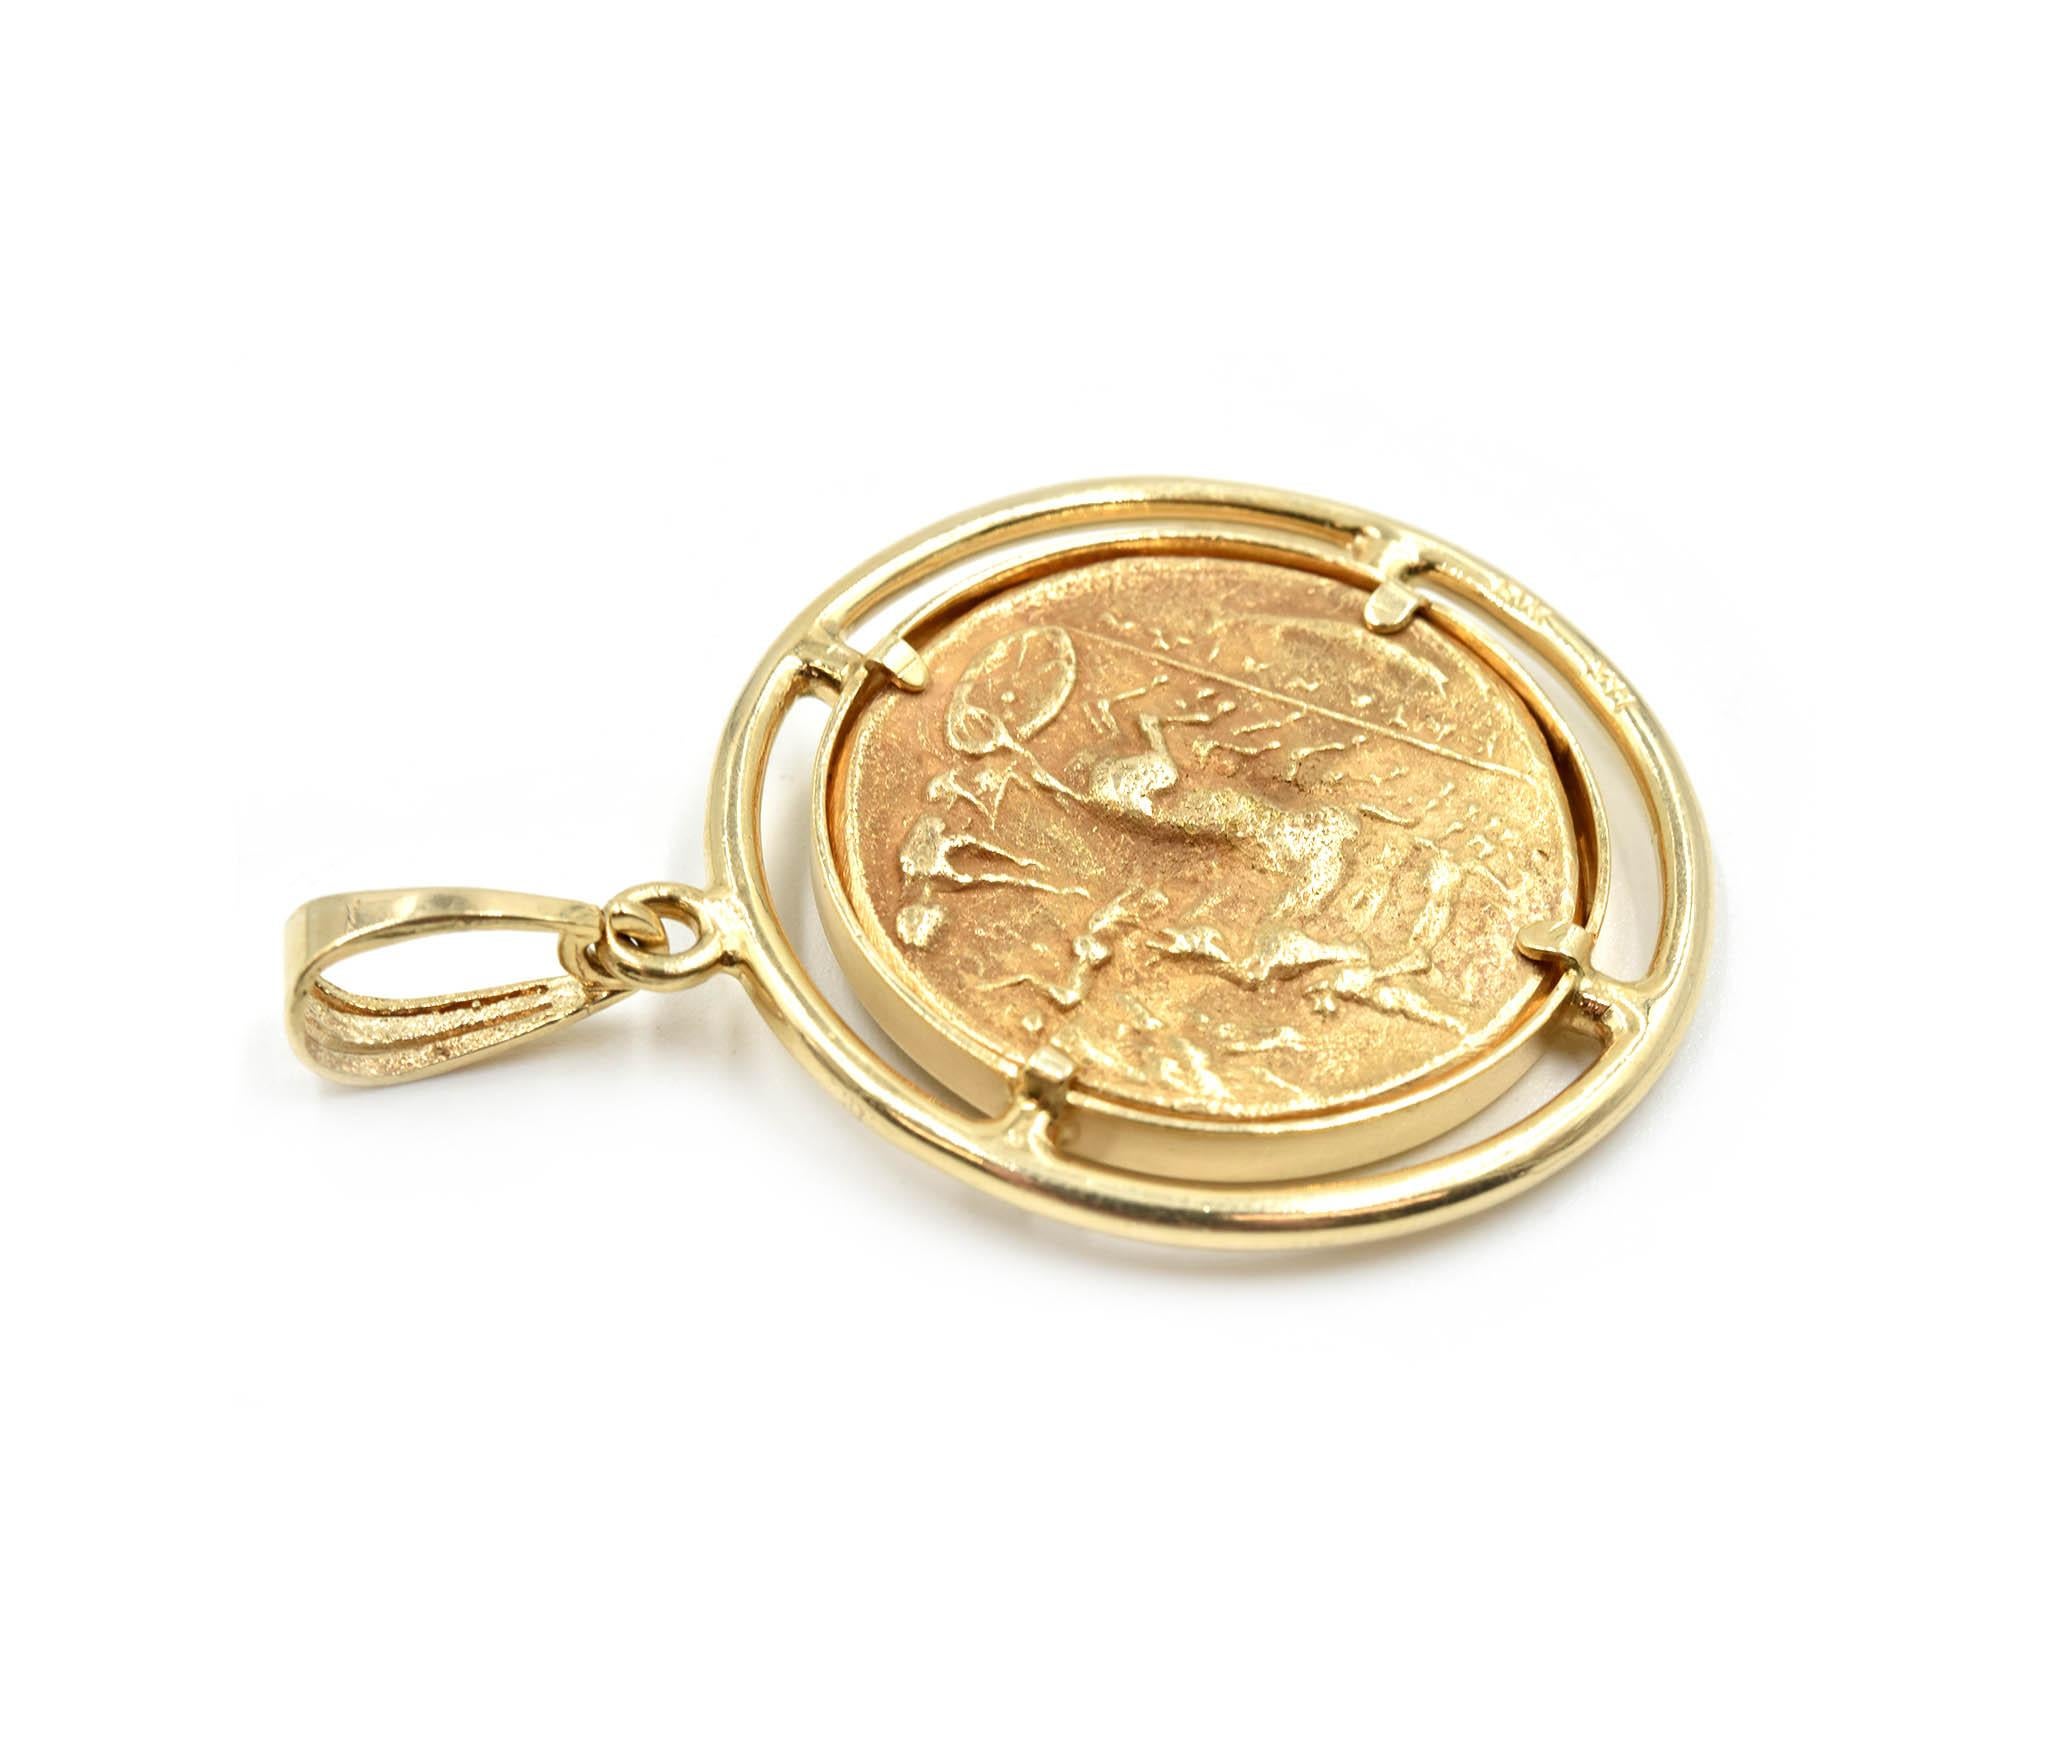 Designer: custom design
Material: 14k yellow gold
Dimensions: coin pendant measures 34.10mm in diameter
Weight: 23.17 grams
